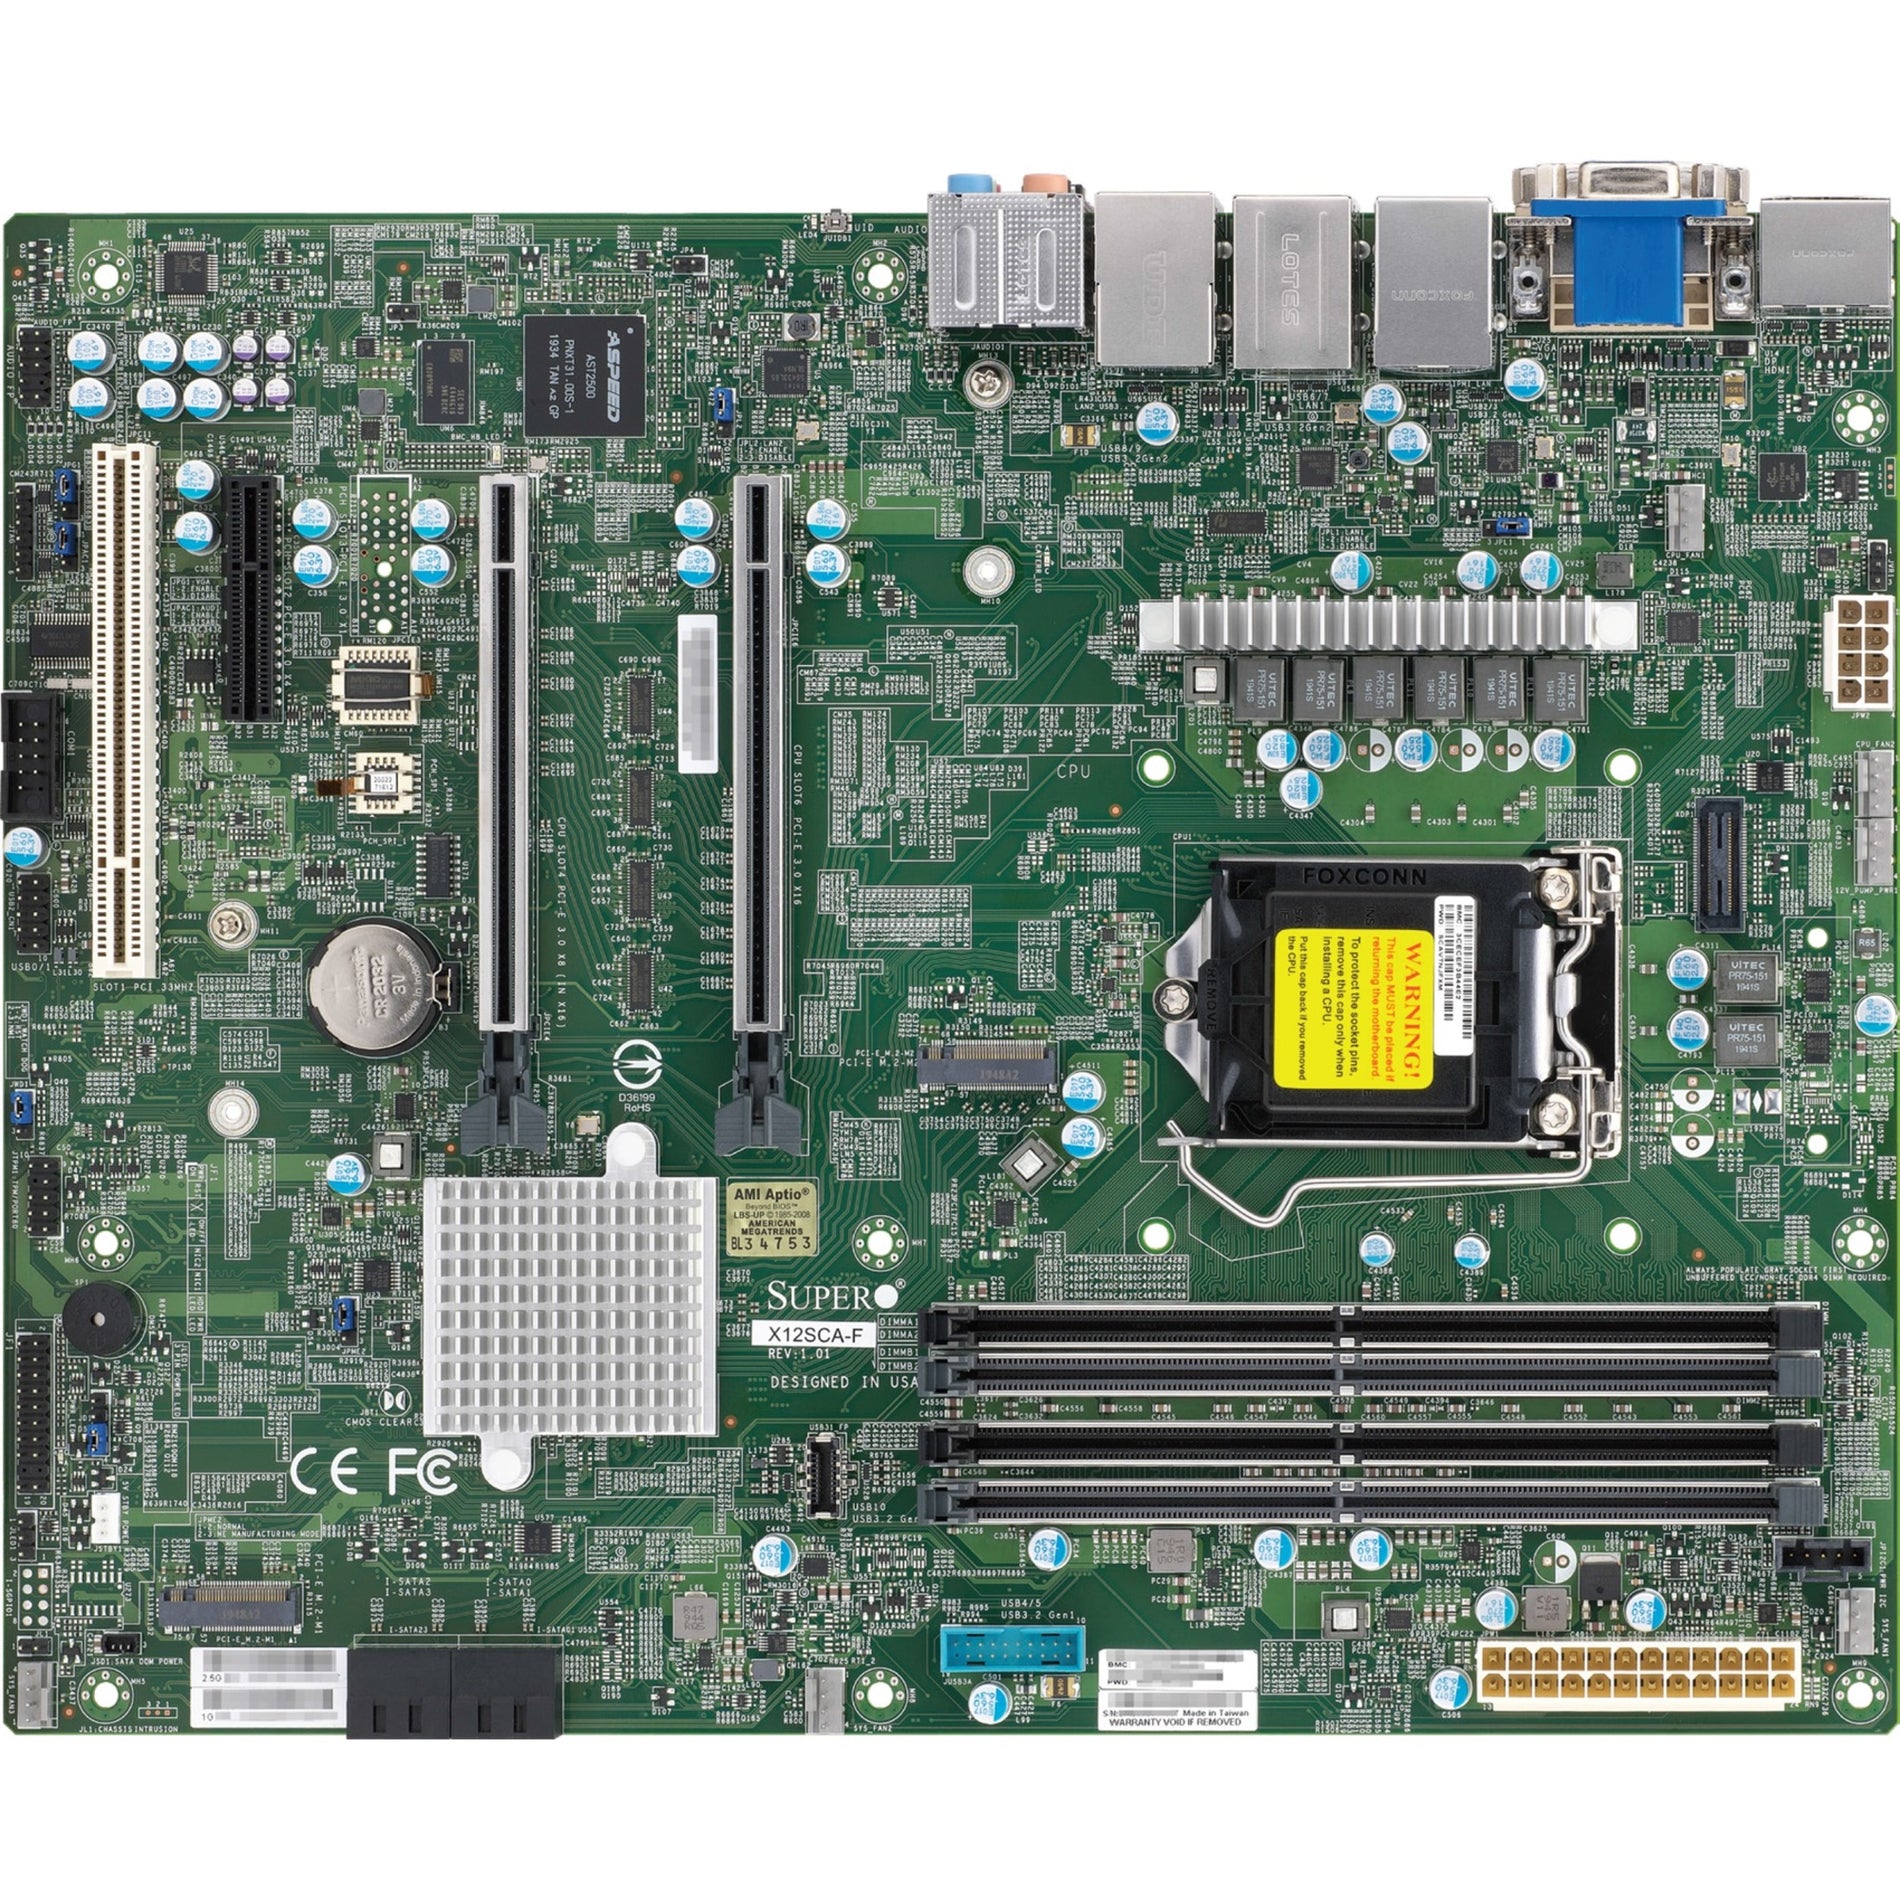 Supermicro MBD-X12SCA-F-B X12SCA-F Workstation Motherboard, ATX, DDR4, IPMI, 2XGBE, 4XSATA3